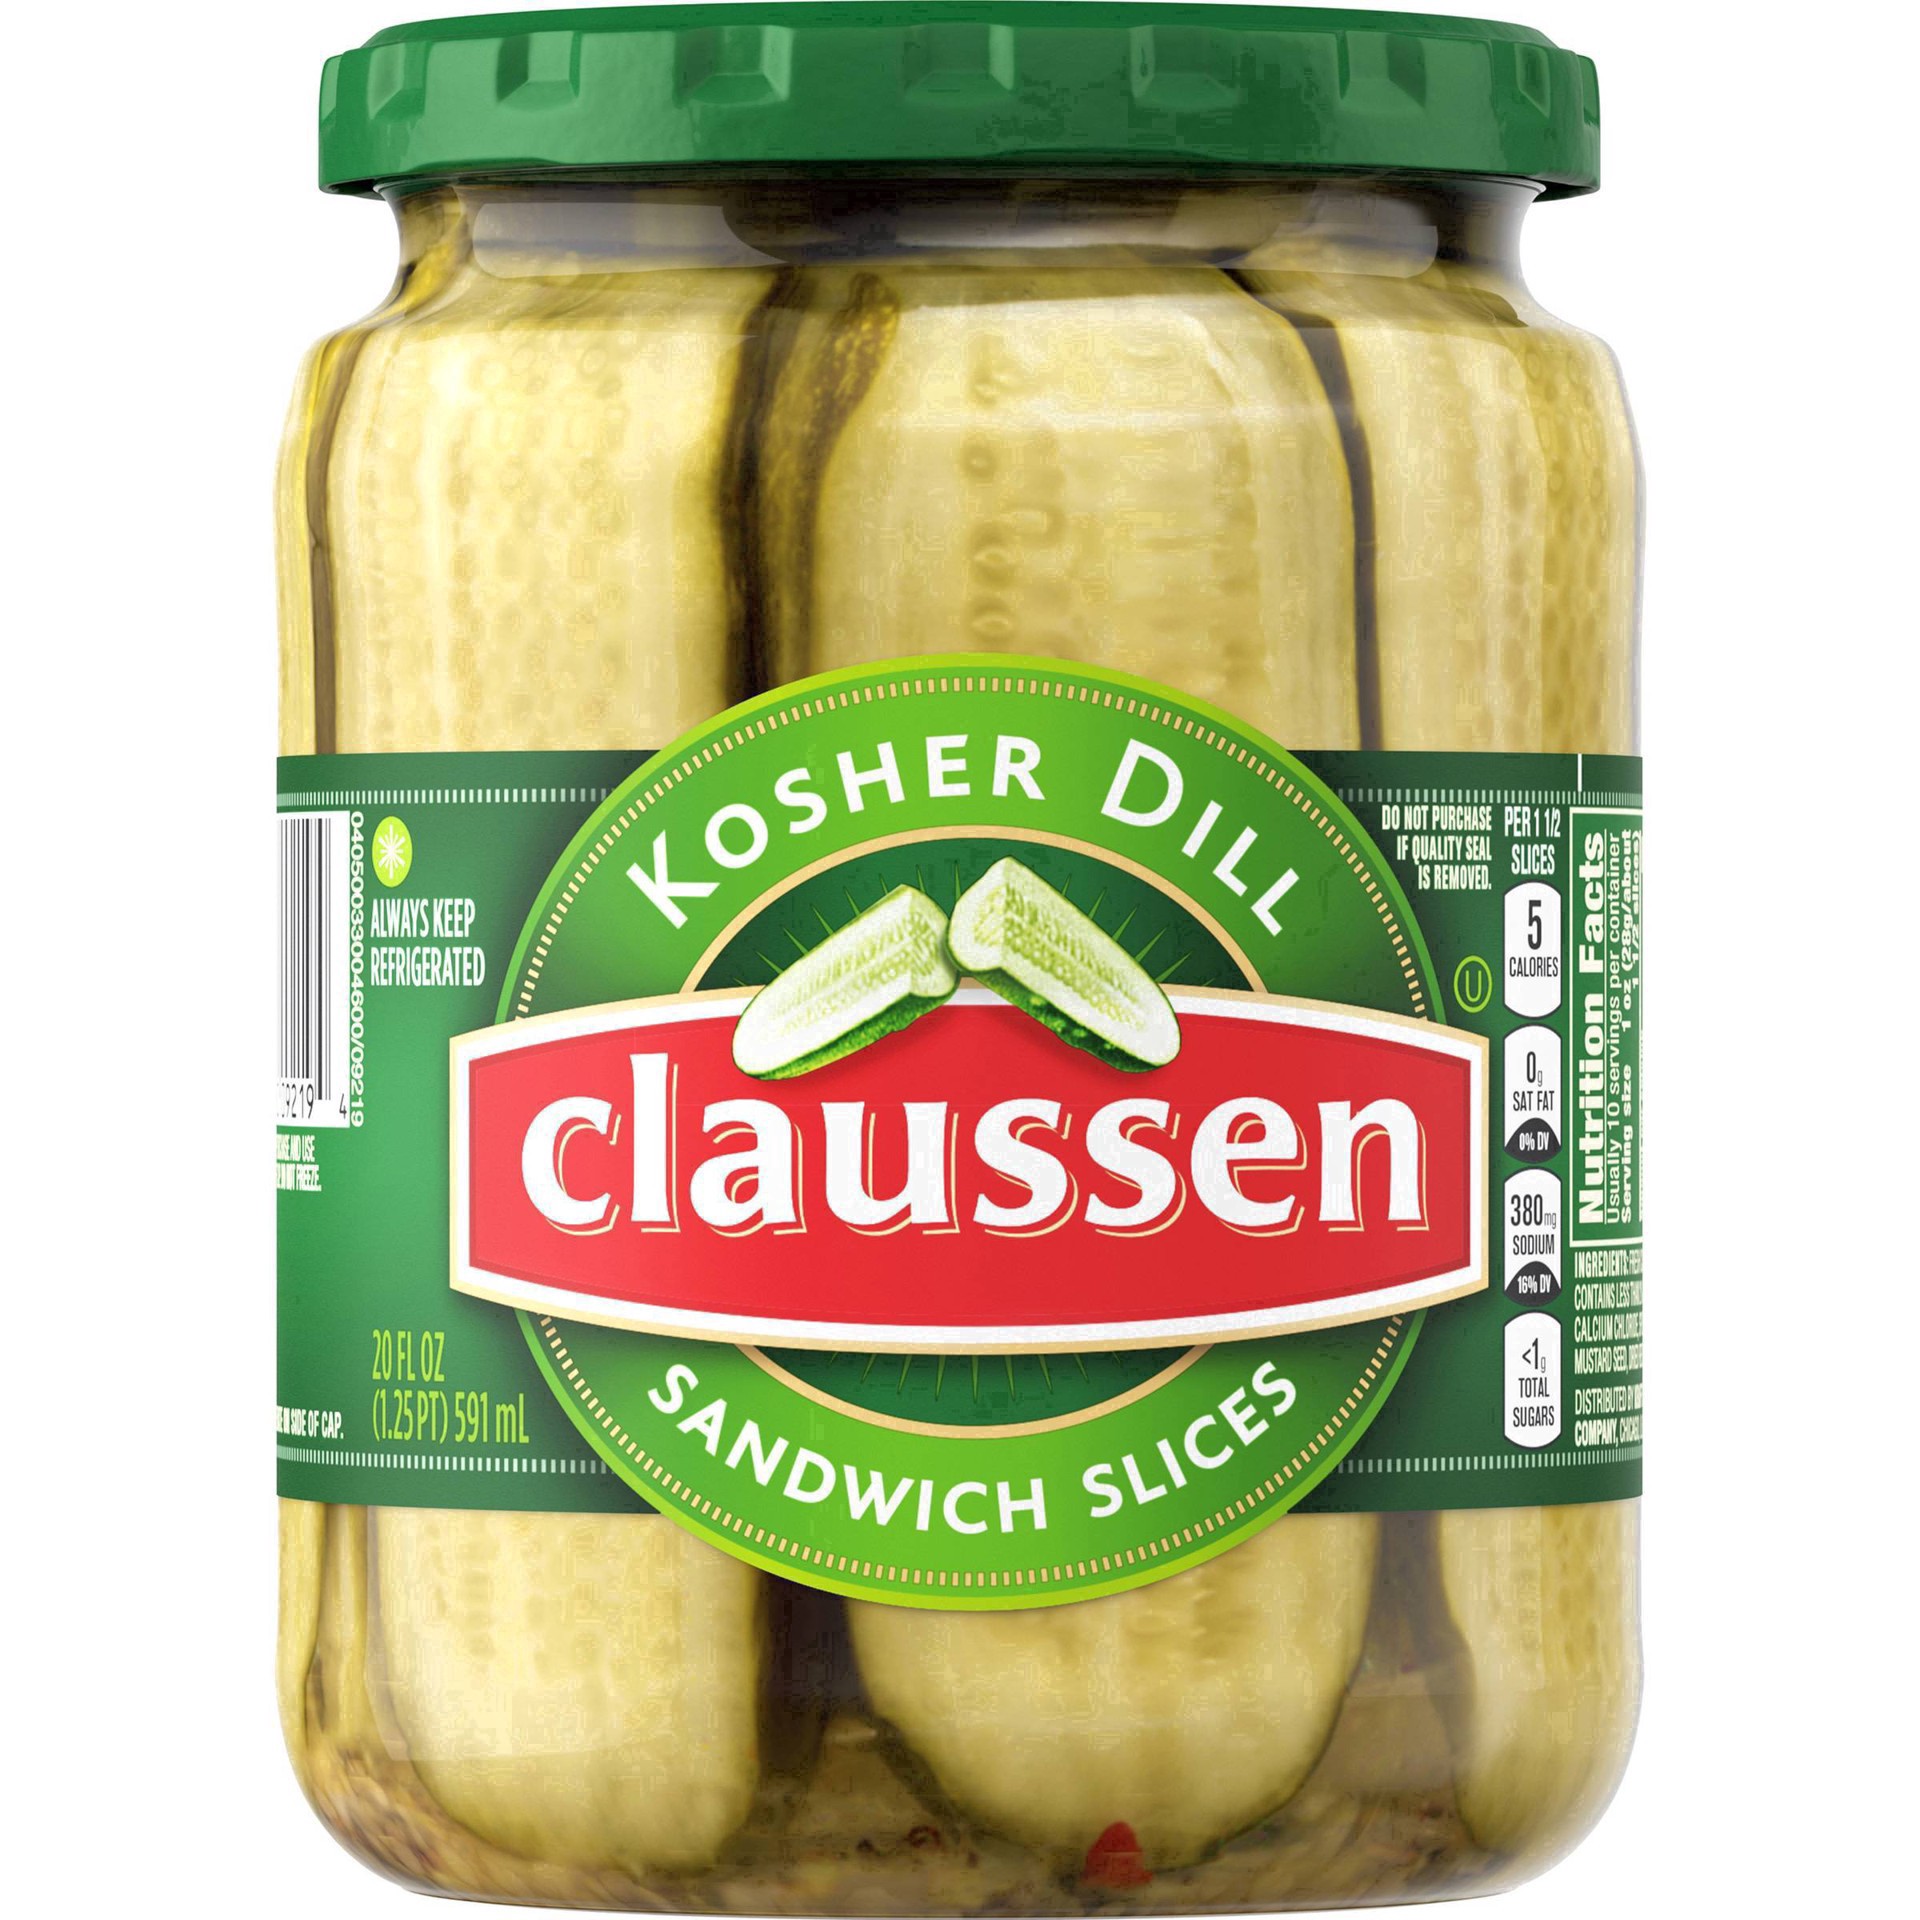 slide 55 of 144, Claussen Kosher Dill Pickle Sandwich Slices, 20 fl. oz. Jar, 20 fl oz